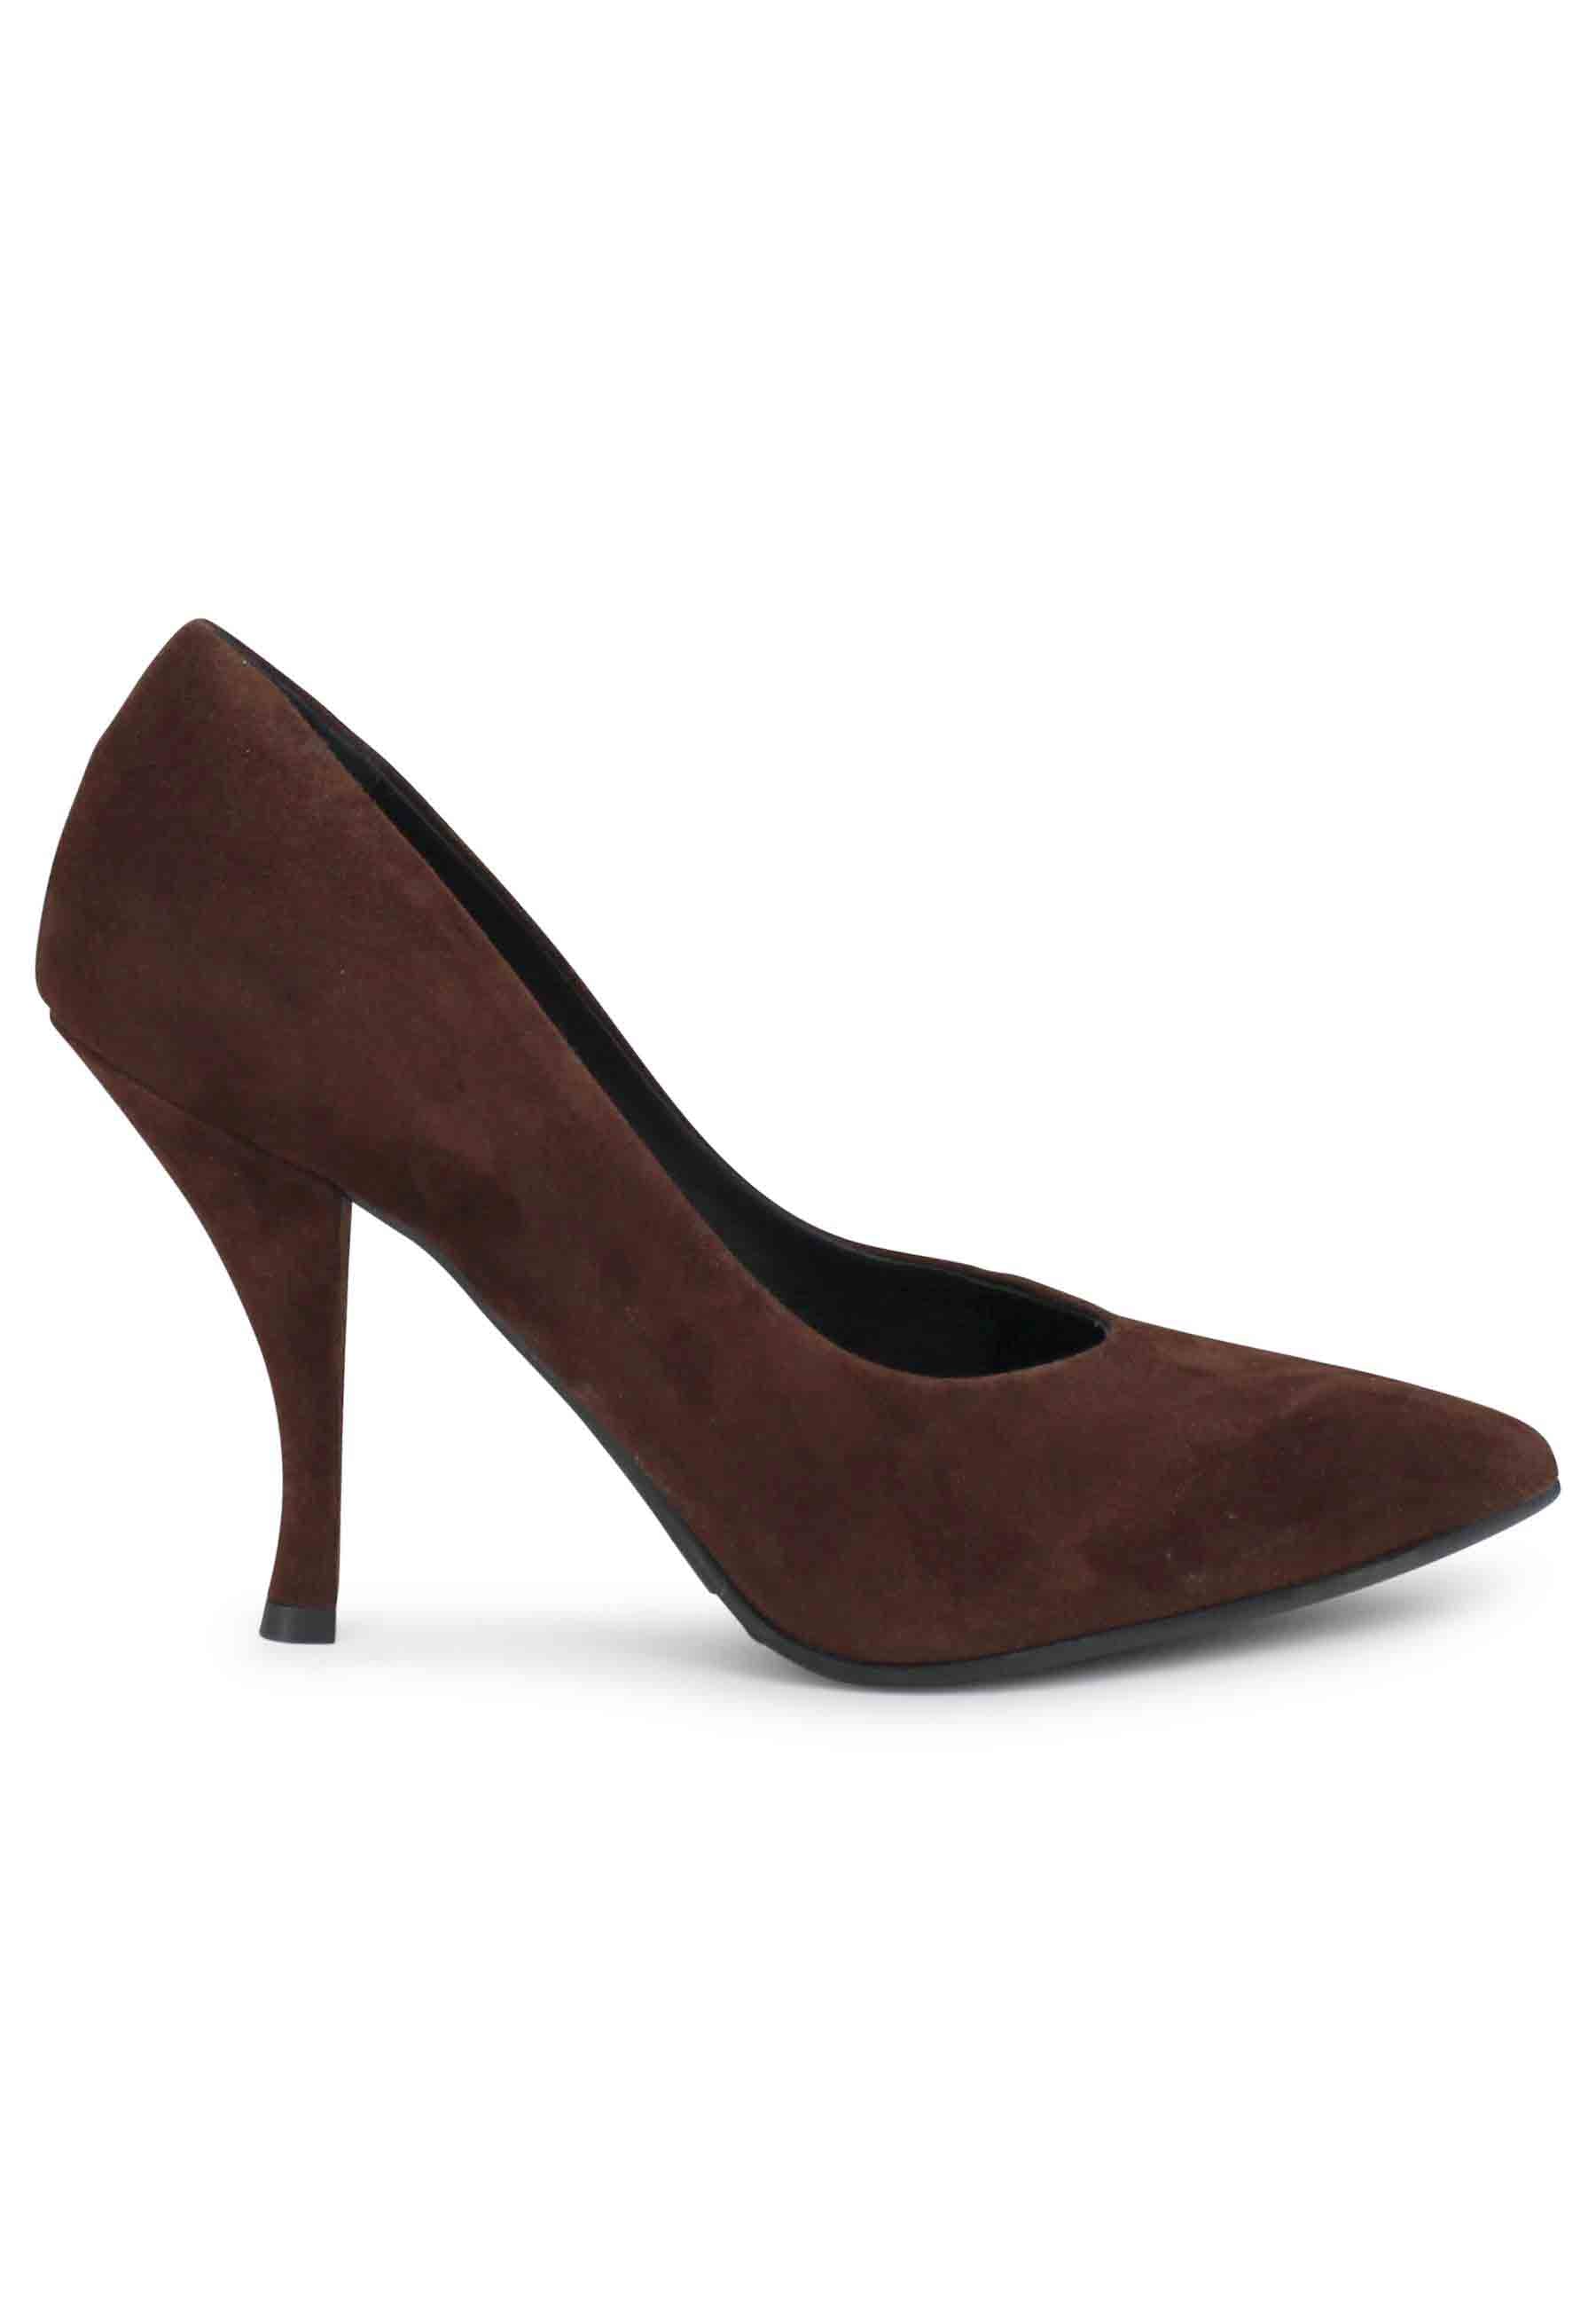 Women's high heel brown suede pumps